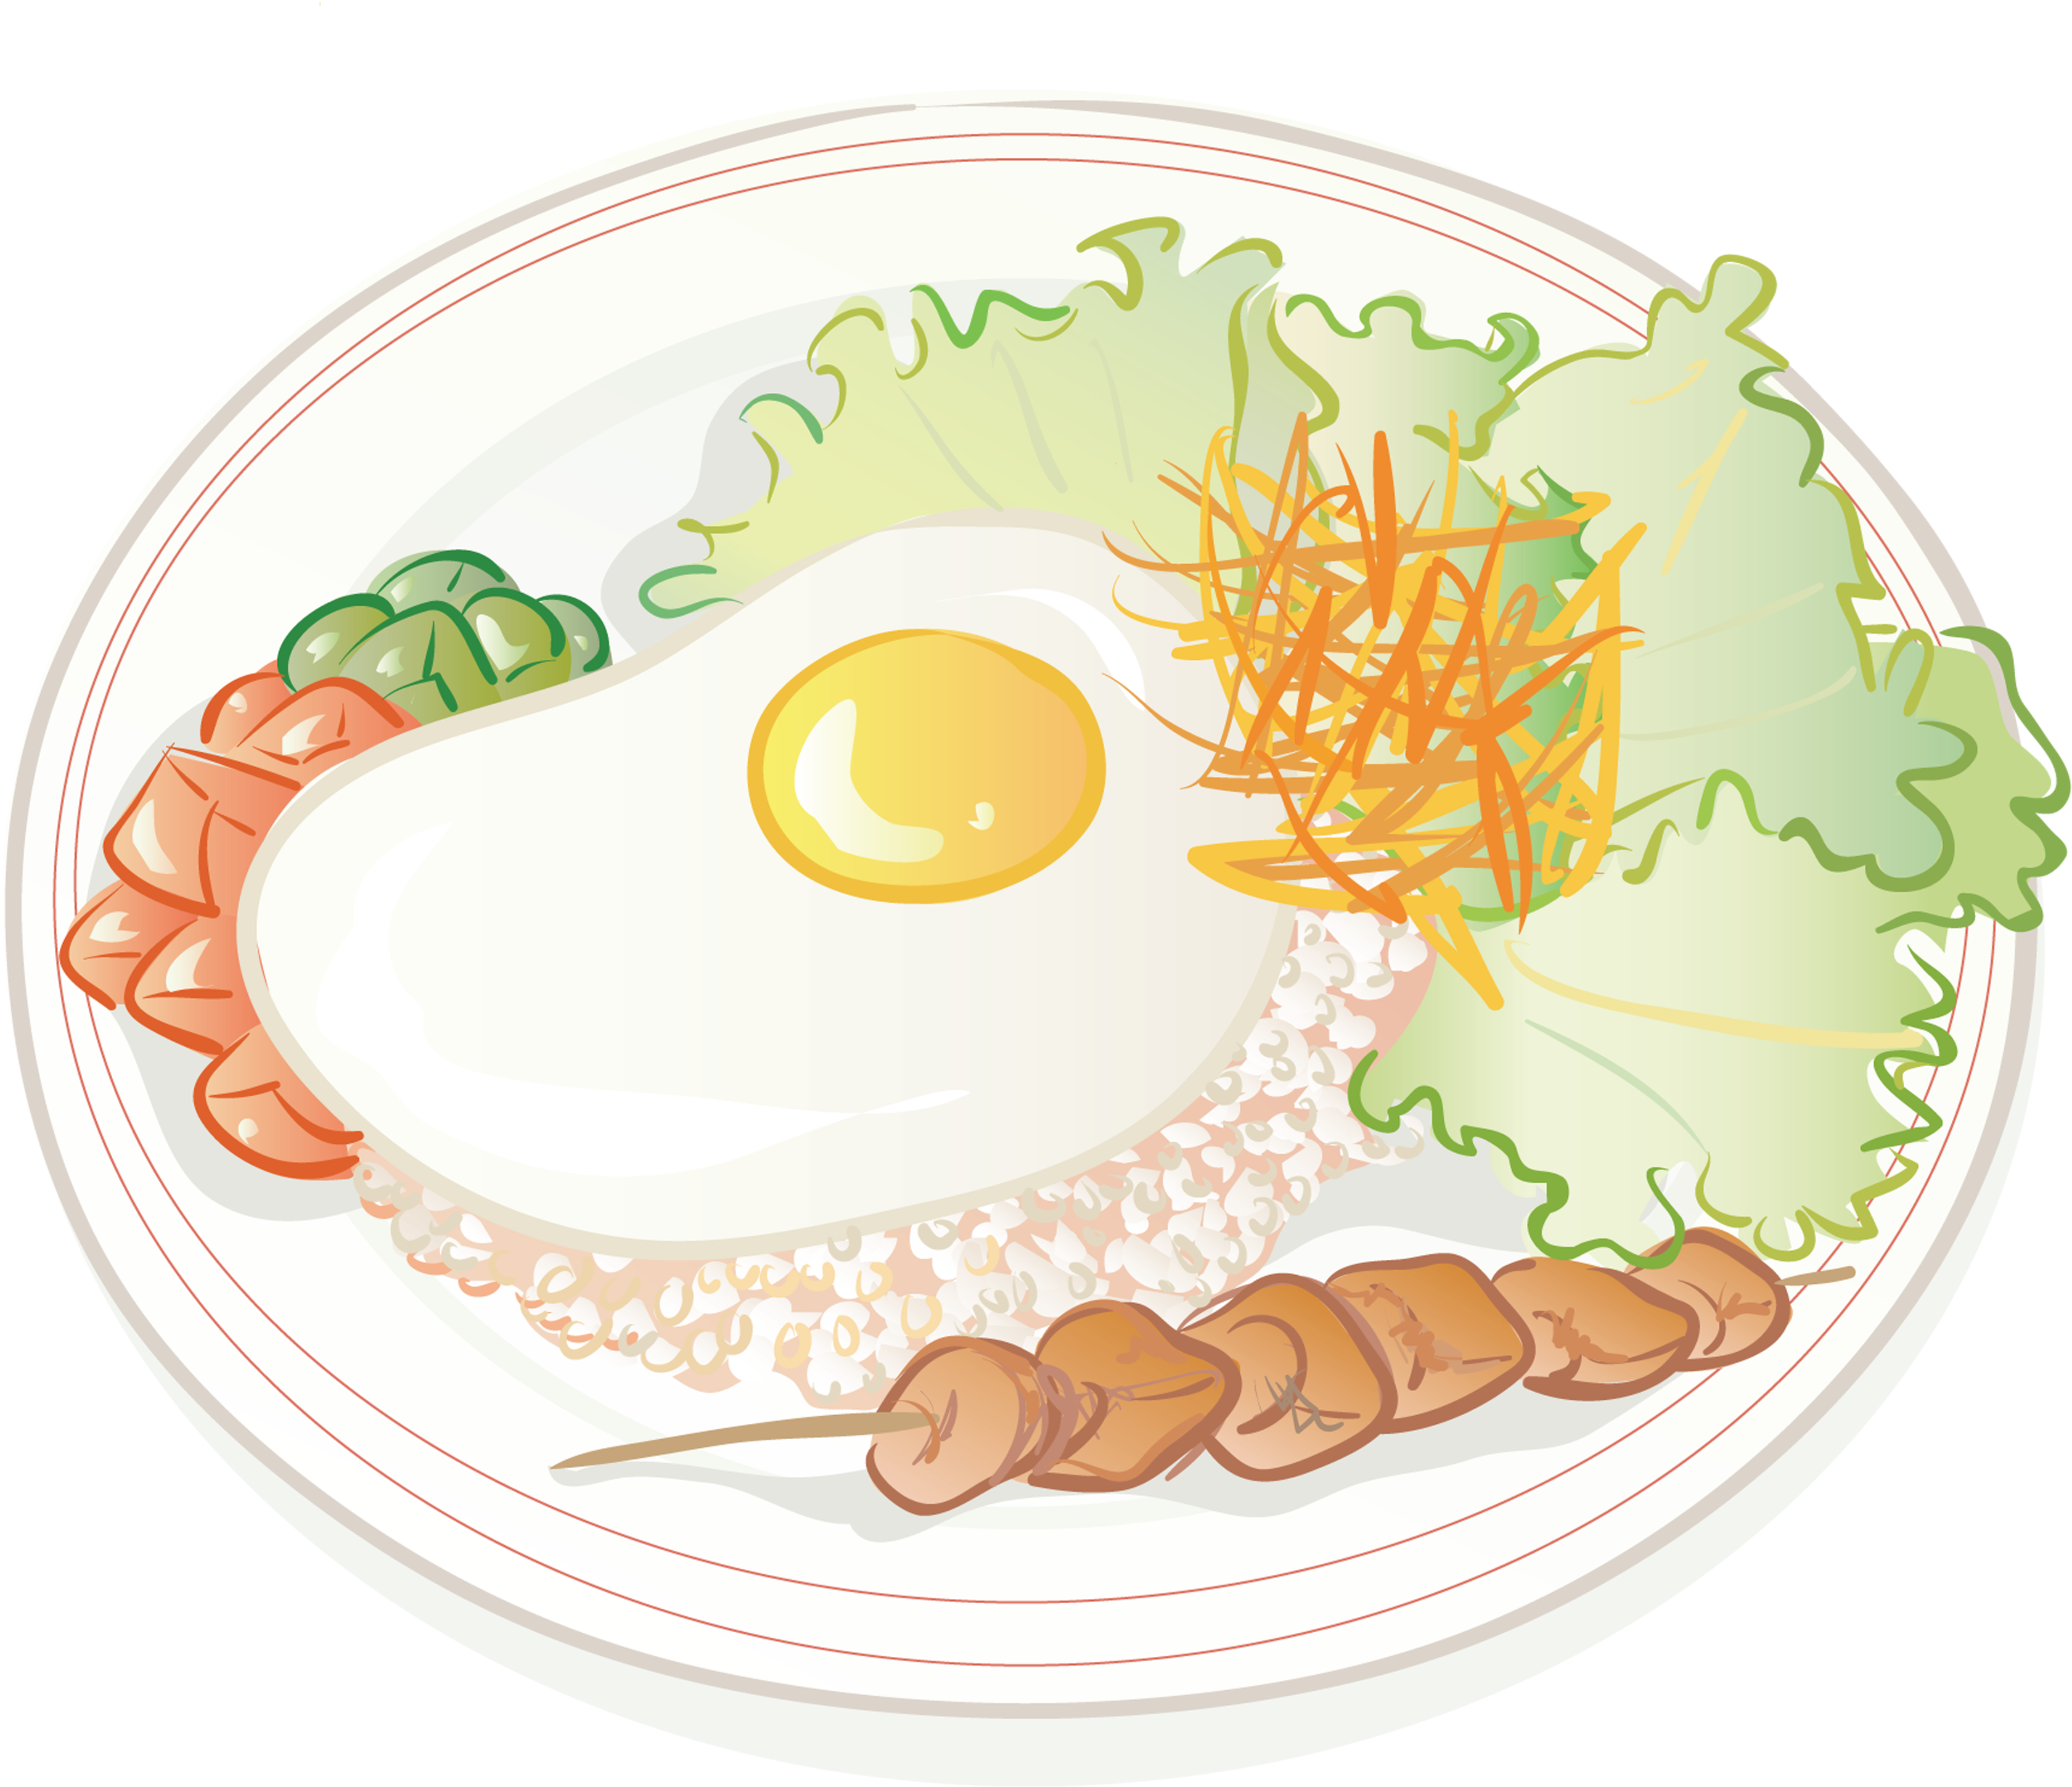 Uovo fritto e cartone animato di riso fritto, cucina cinese, cibo